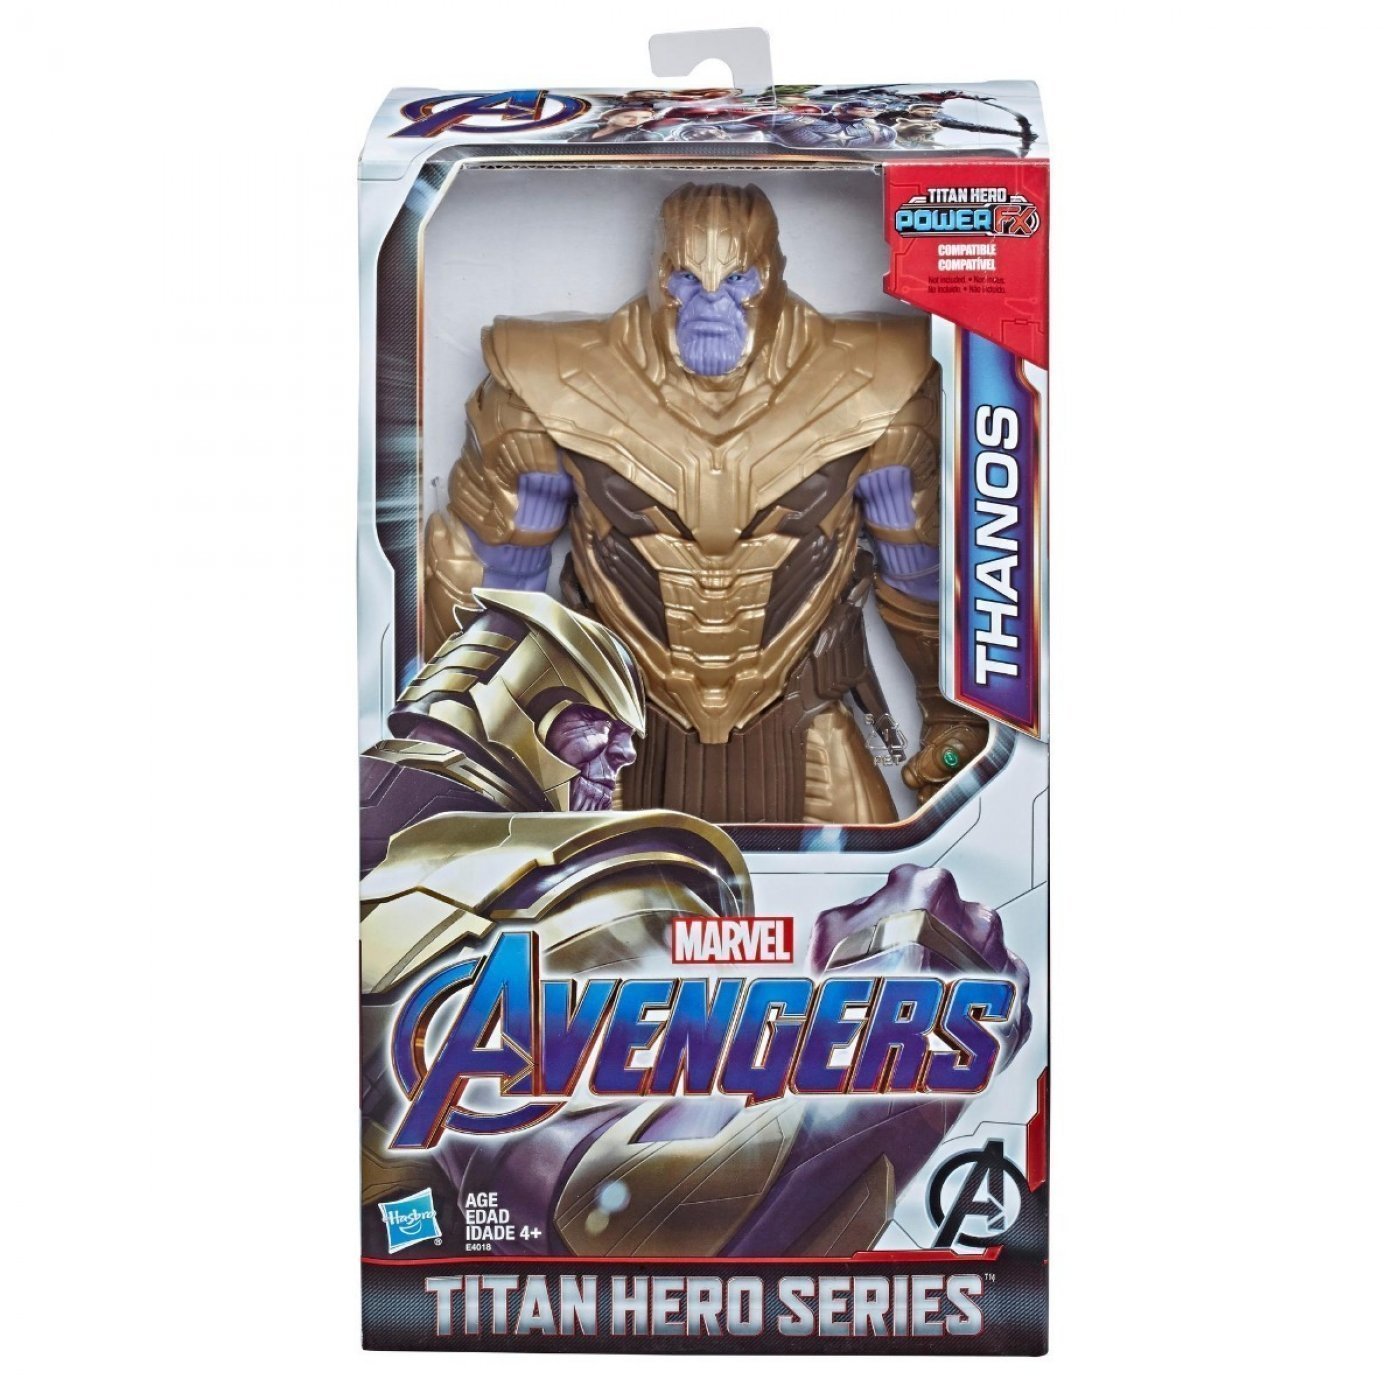 THANOS - Titan Hero Series